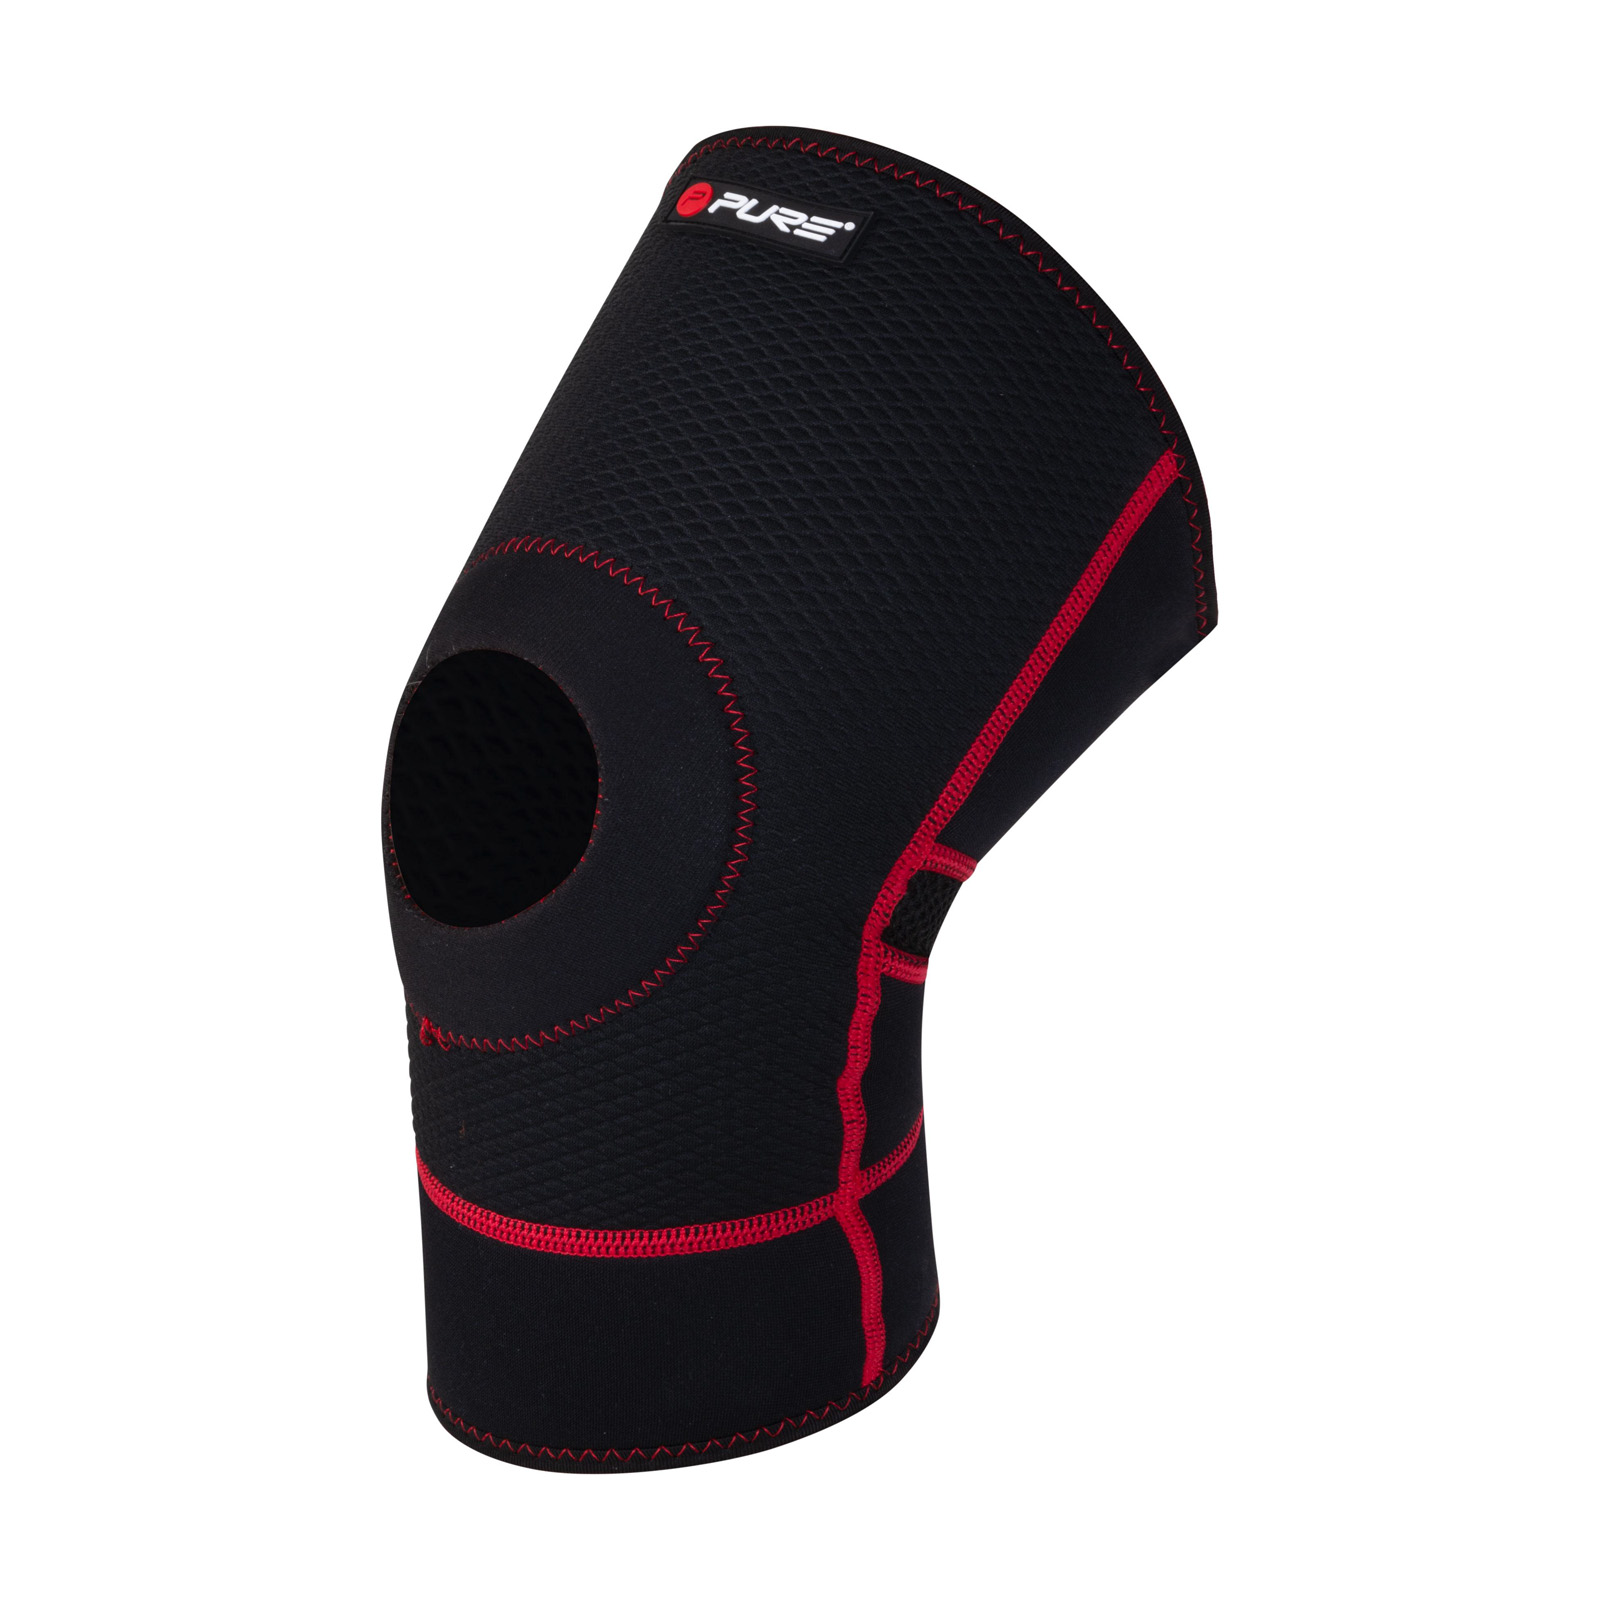 Kniebandage mit Patellaring XL Sportbandage für Damen und Herren